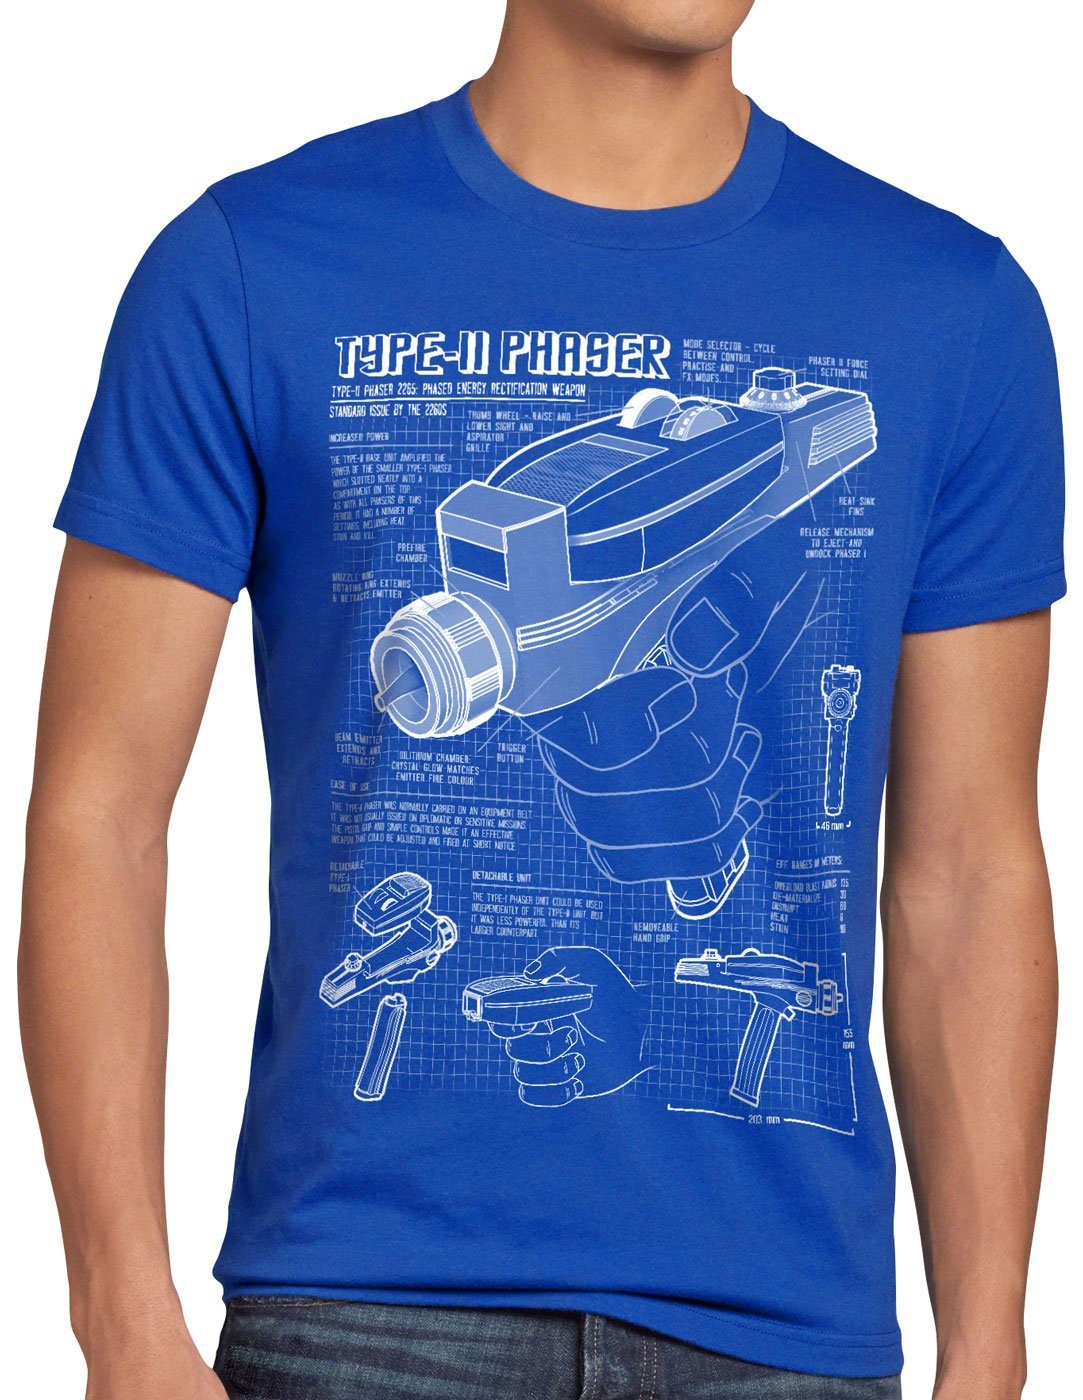 style3 Print-Shirt Herren NCC-1701 Phaser star T-Shirt trek trekkie Blaupause 2265